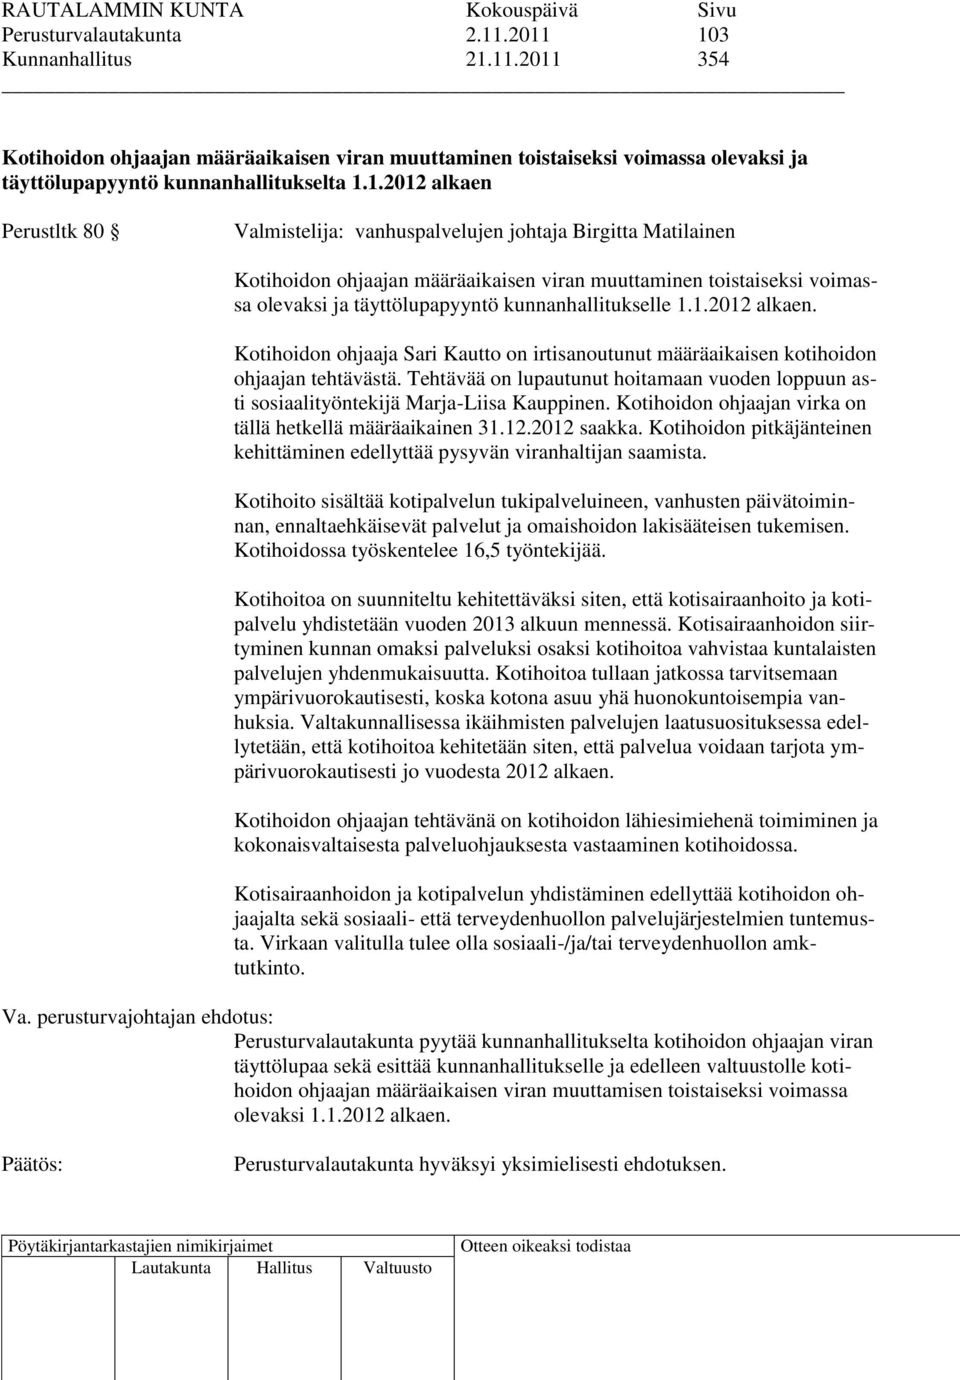 Valmistelija: vanhuspalvelujen johtaja Birgitta Matilainen Kotihoidon ohjaajan määräaikaisen viran muuttaminen toistaiseksi voimassa olevaksi ja täyttölupapyyntö kunnanhallitukselle 1.1.2012 alkaen.